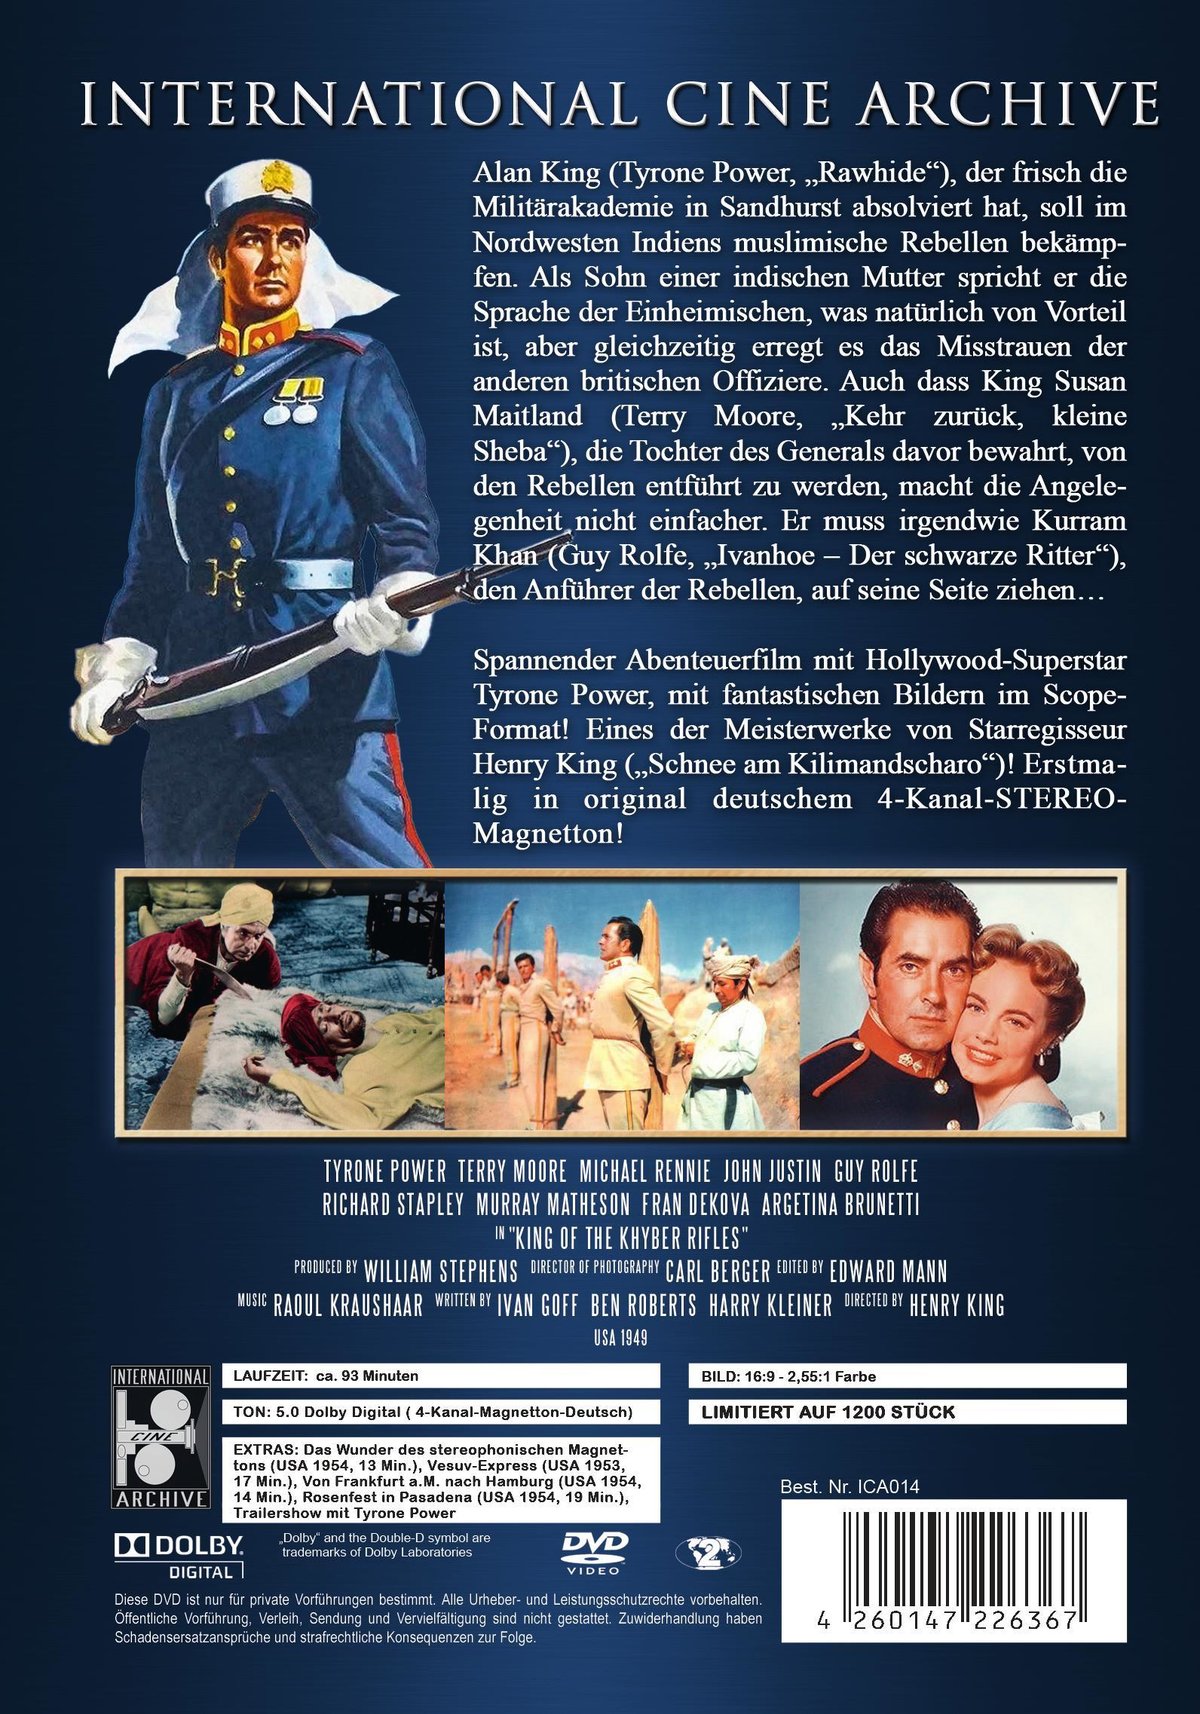 Der Hauptmann von Peshawar (1953)  - International Cine Archive # 014 - Limited 1200 Stück - Mit Tyrone Power mit  4-Kanal- STEREO-Magnetton!  (DVD)